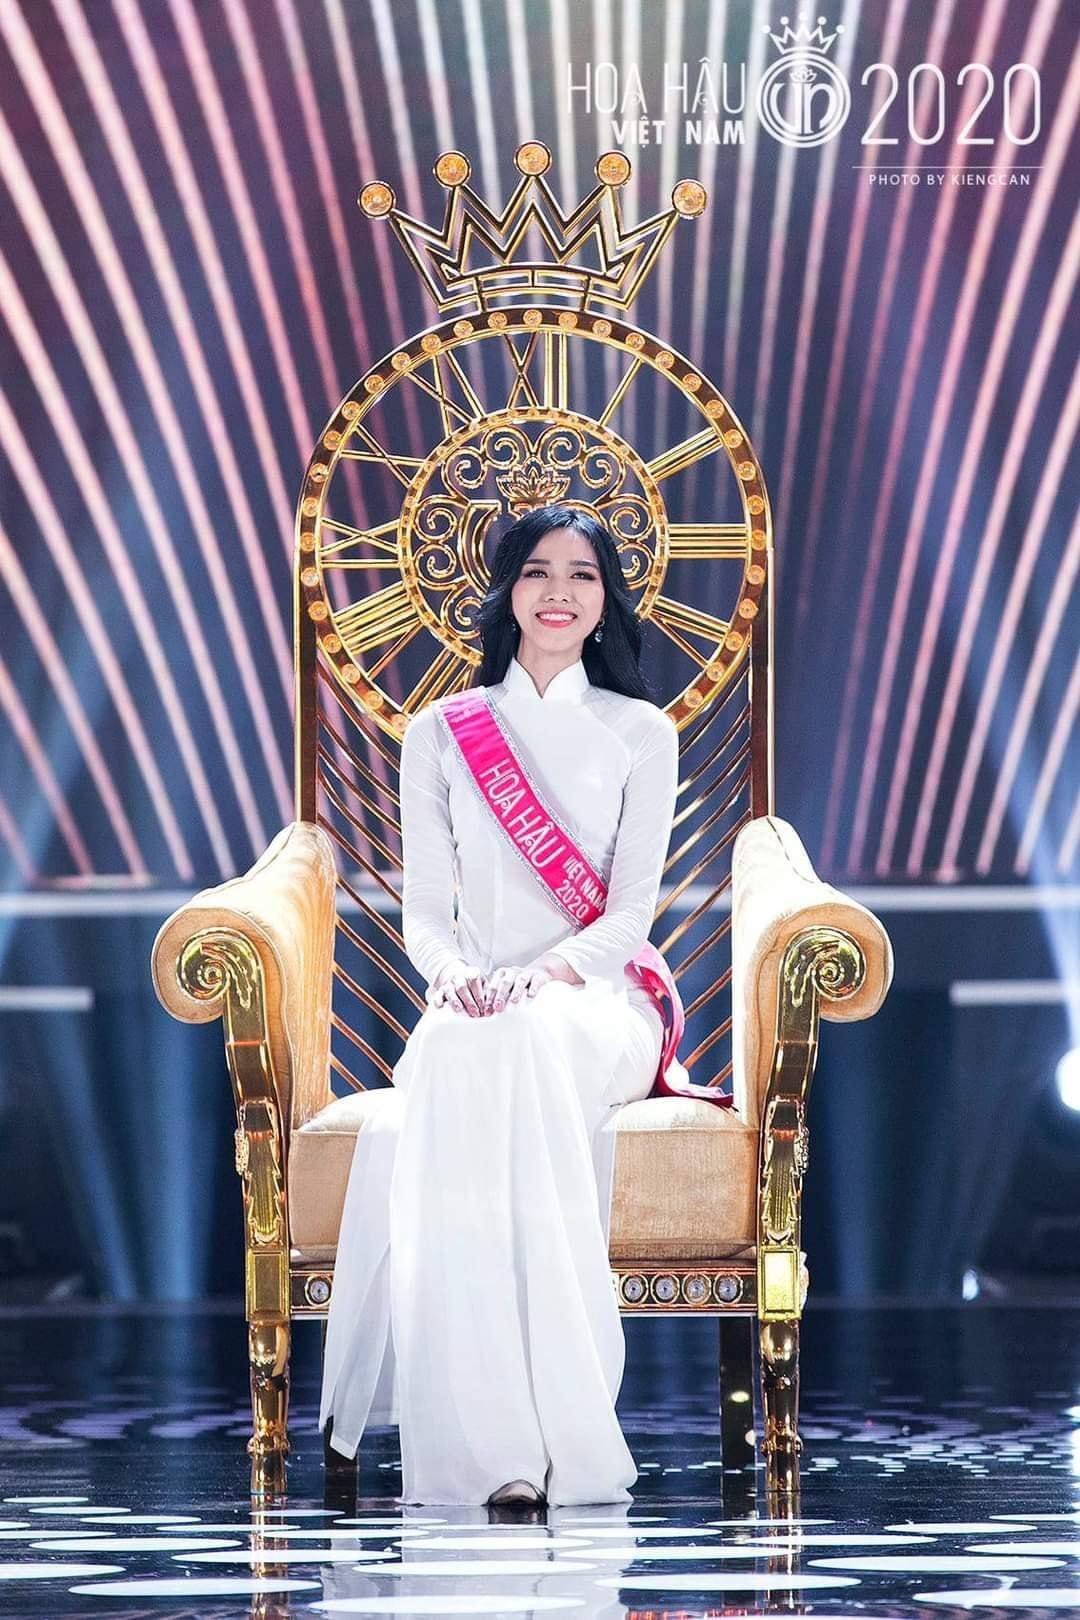 Nhìn lại loạt khoảnh khắc đăng quang của Hoa hậu Đỗ Thị Hà gần 1 năm trước - Ảnh 6